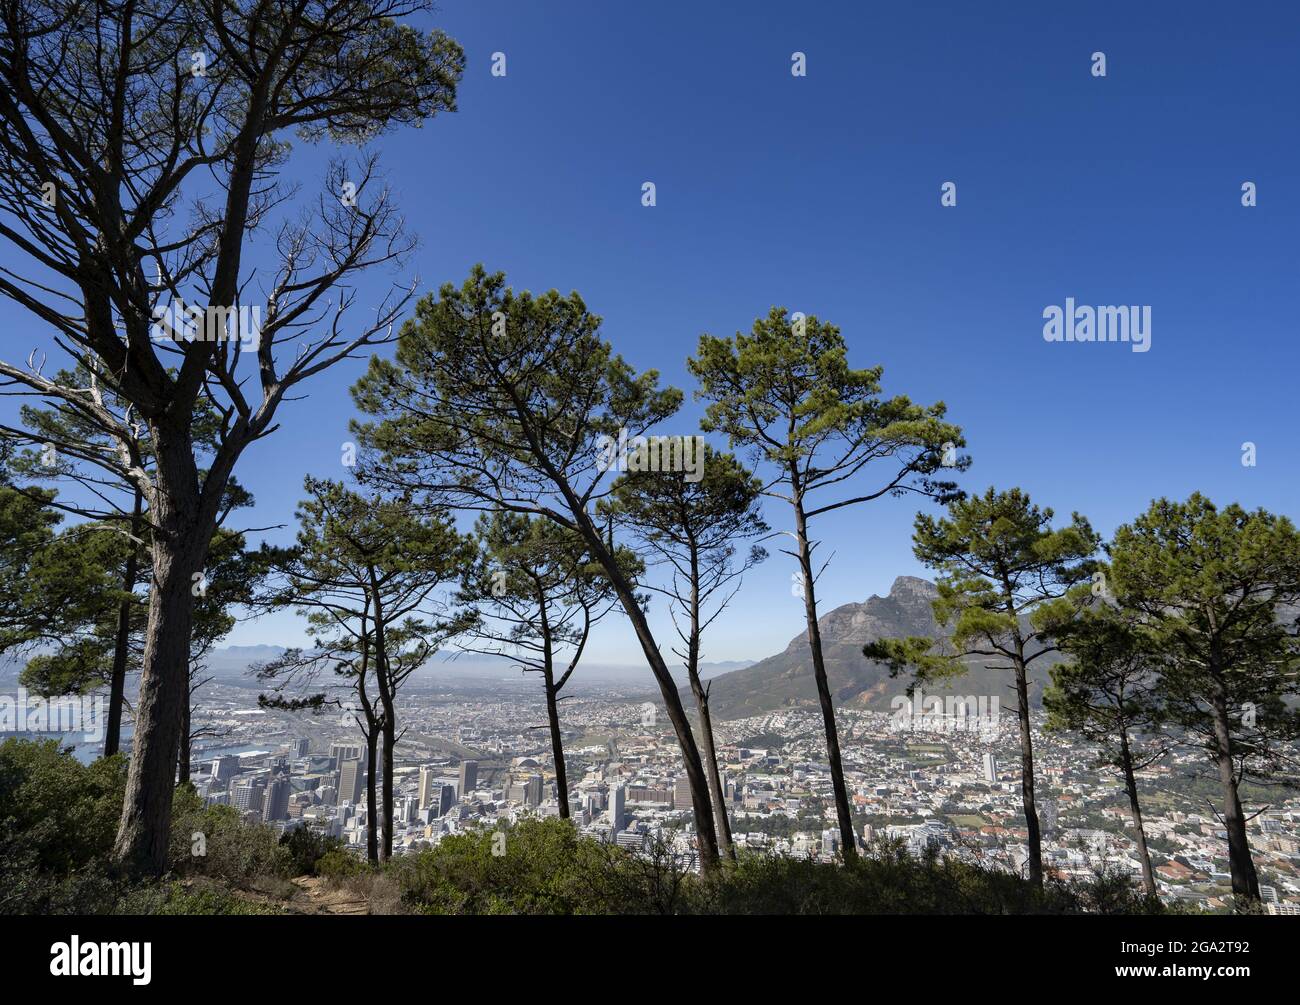 En regardant à travers les arbres, vous pouvez admirer les gratte-ciel du Cap et Devil's Peak depuis signal Hill Park, Cape Town, province du Cap, Afrique du Sud Banque D'Images